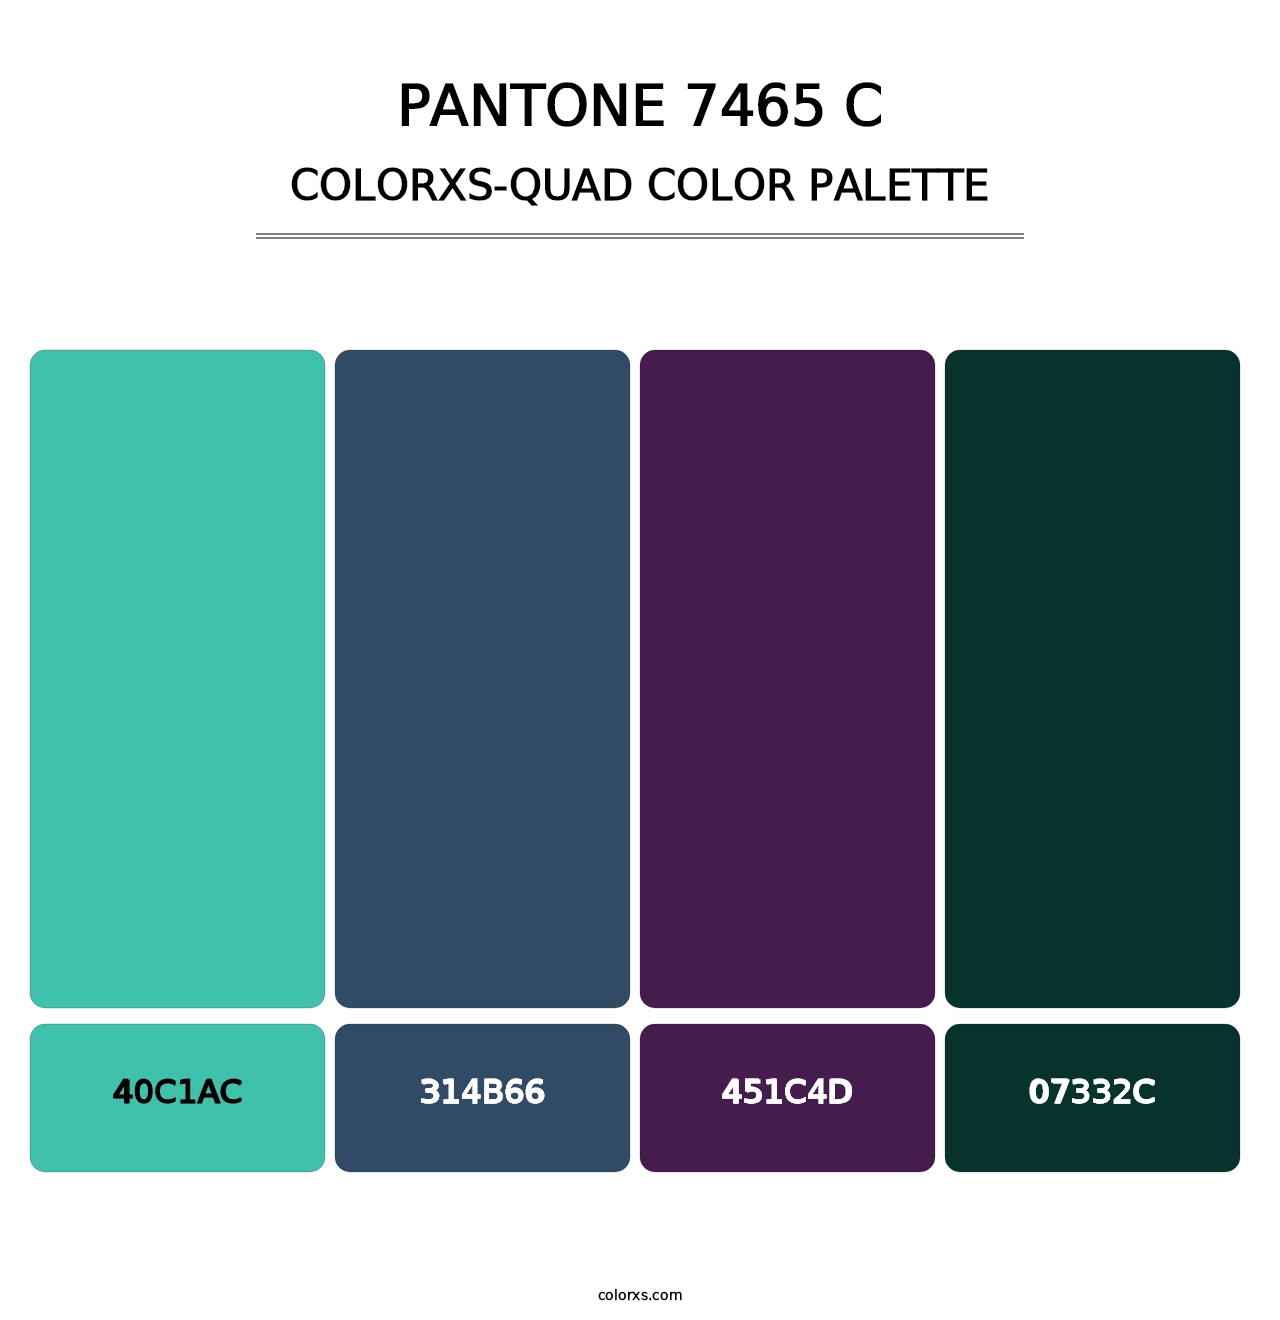 PANTONE 7465 C - Colorxs Quad Palette